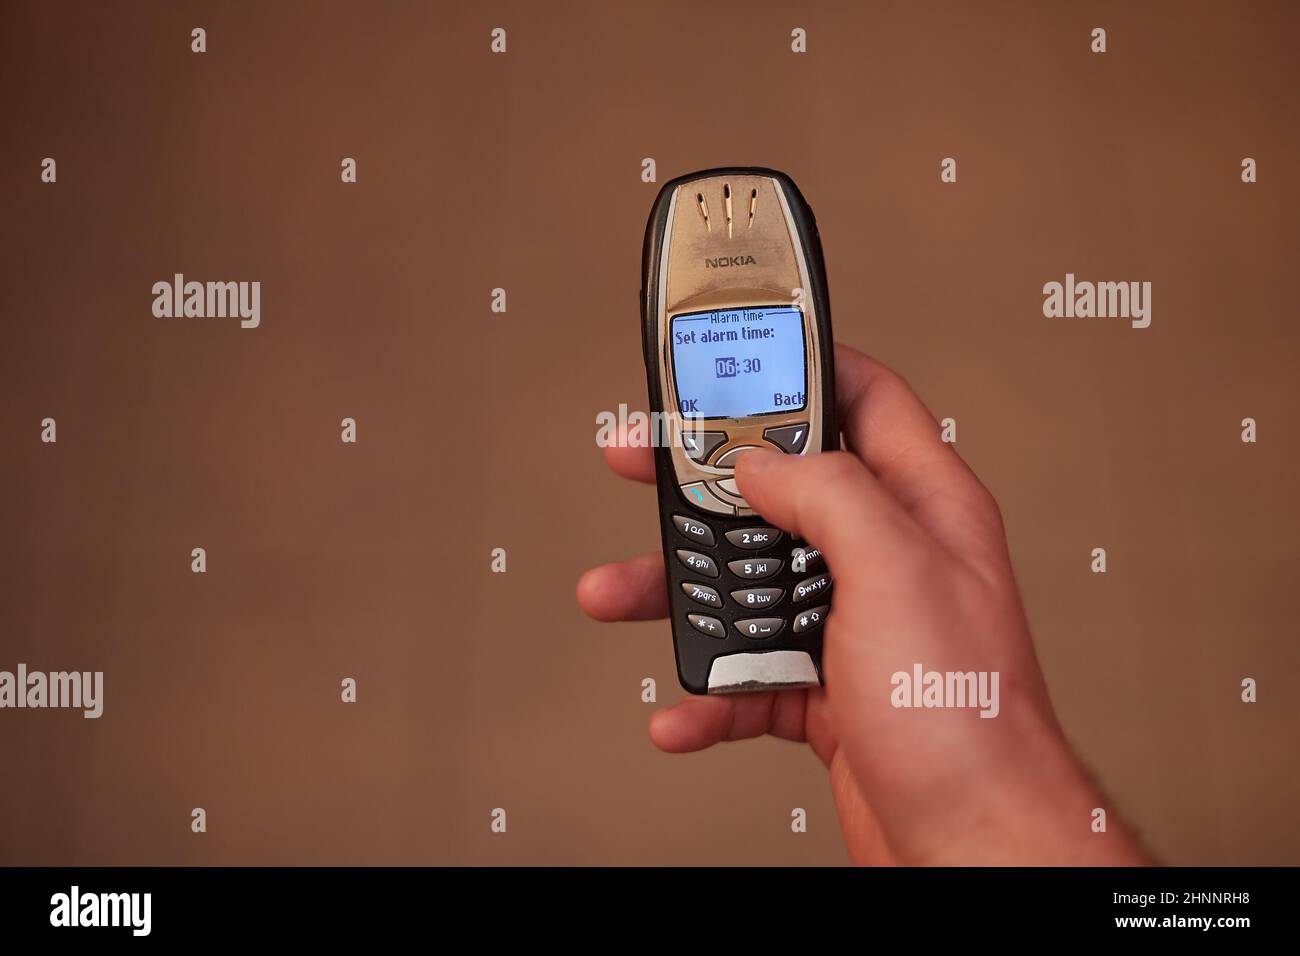 Réglage de l'alarme sur l'ancien téléphone portable, Nokia 6310i Banque D'Images